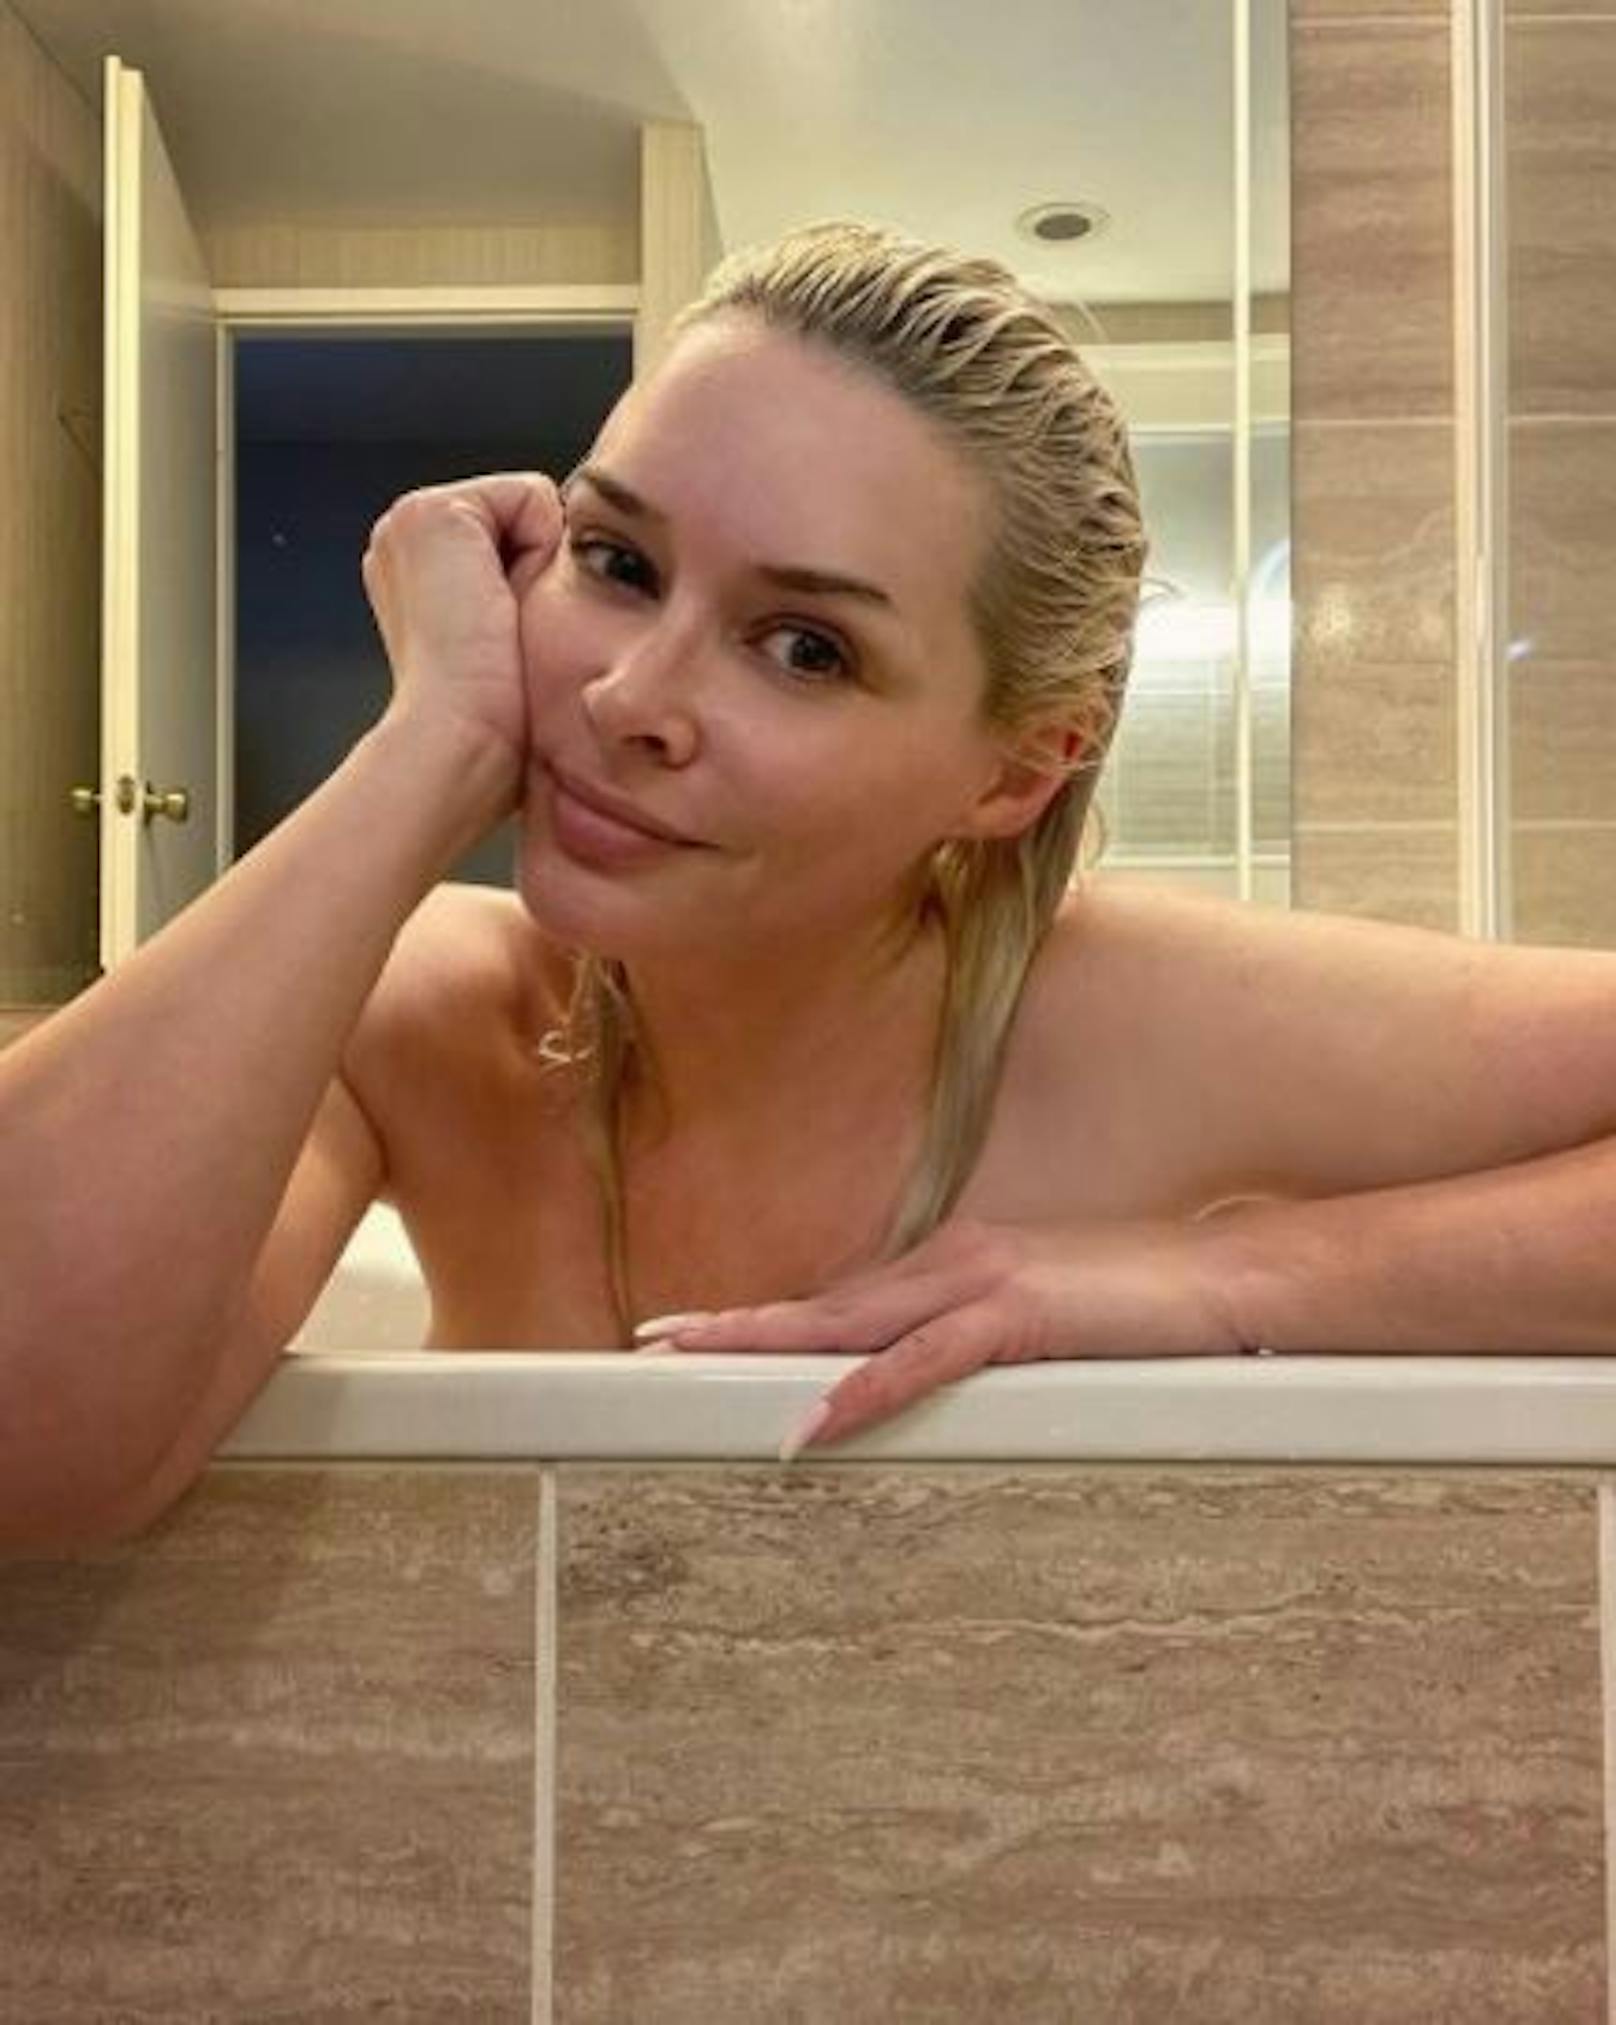 Kult-Blondie Daniela Katzenberger grüßt ihre Fangemeinde total entspannt aus der Badewanne und verzichtet dabei gerne auf Make-up. Ein seltener Look, der dafür bei ihren Followern für Wellen der Begeisterung sorgt.